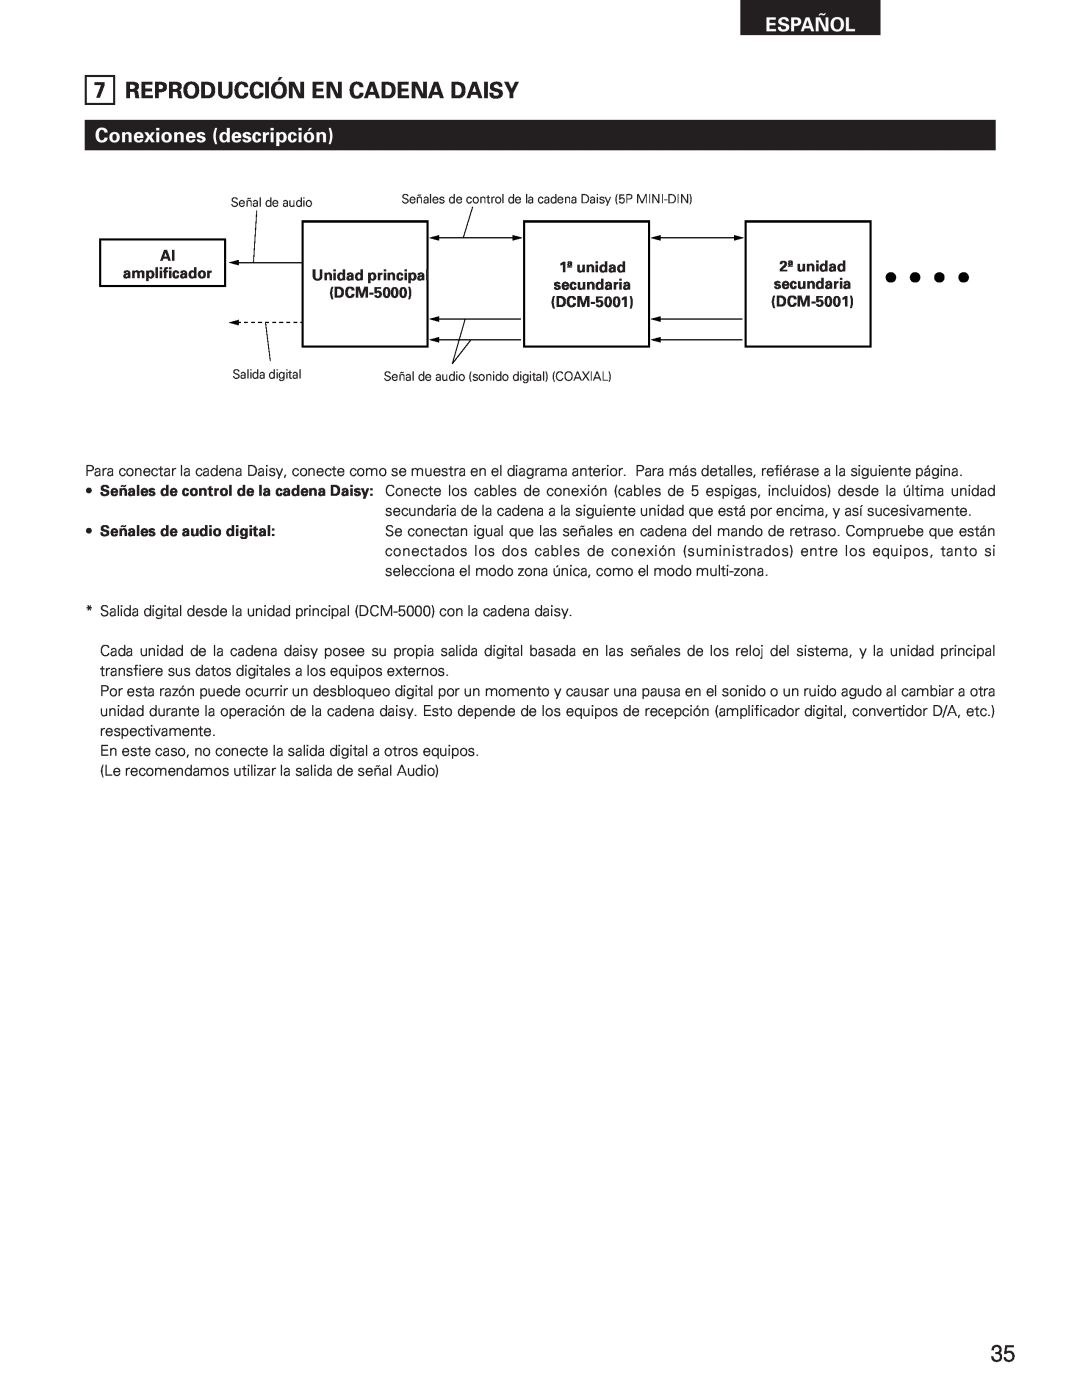 Denon DCM-5001 manual Reproducción En Cadena Daisy, Conexiones descripción, Español 